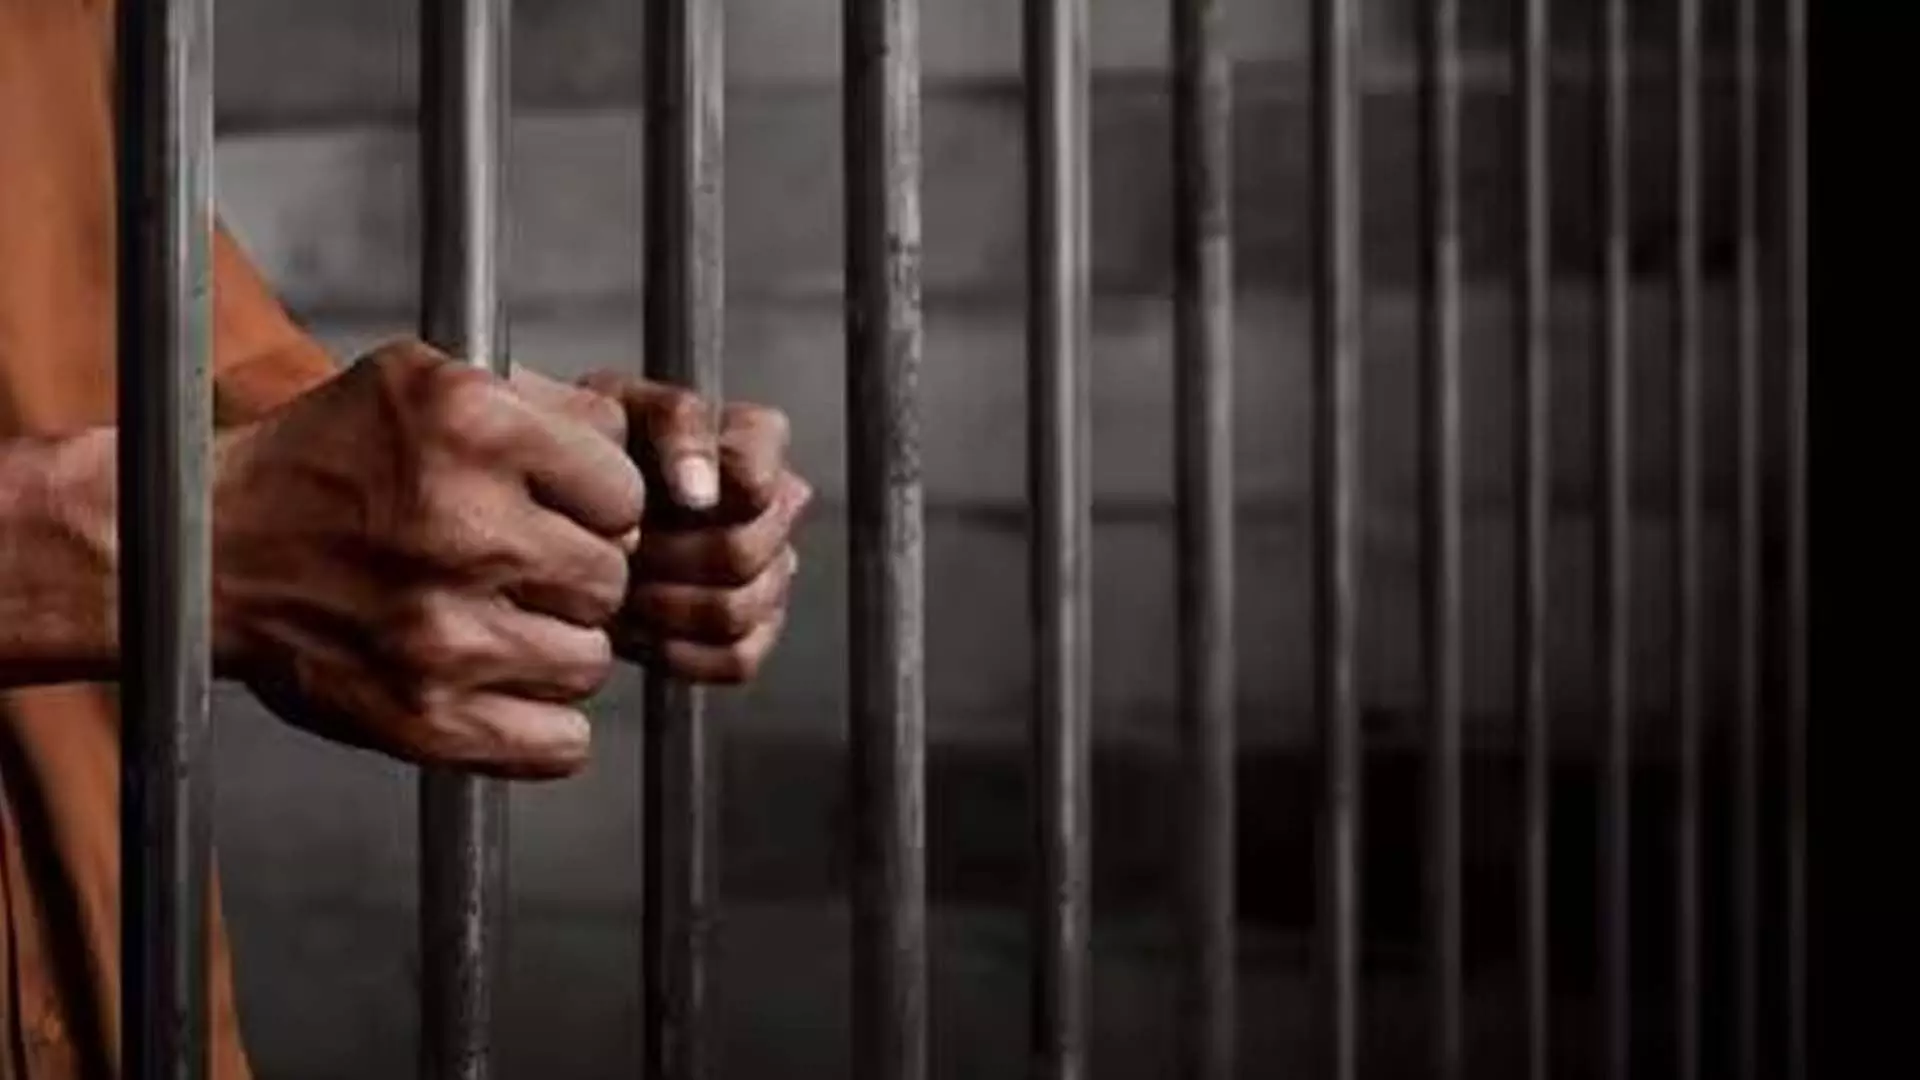 CHANDIGAD: आपराधिक धमकी के लिए व्यक्ति को 2 साल की जेल